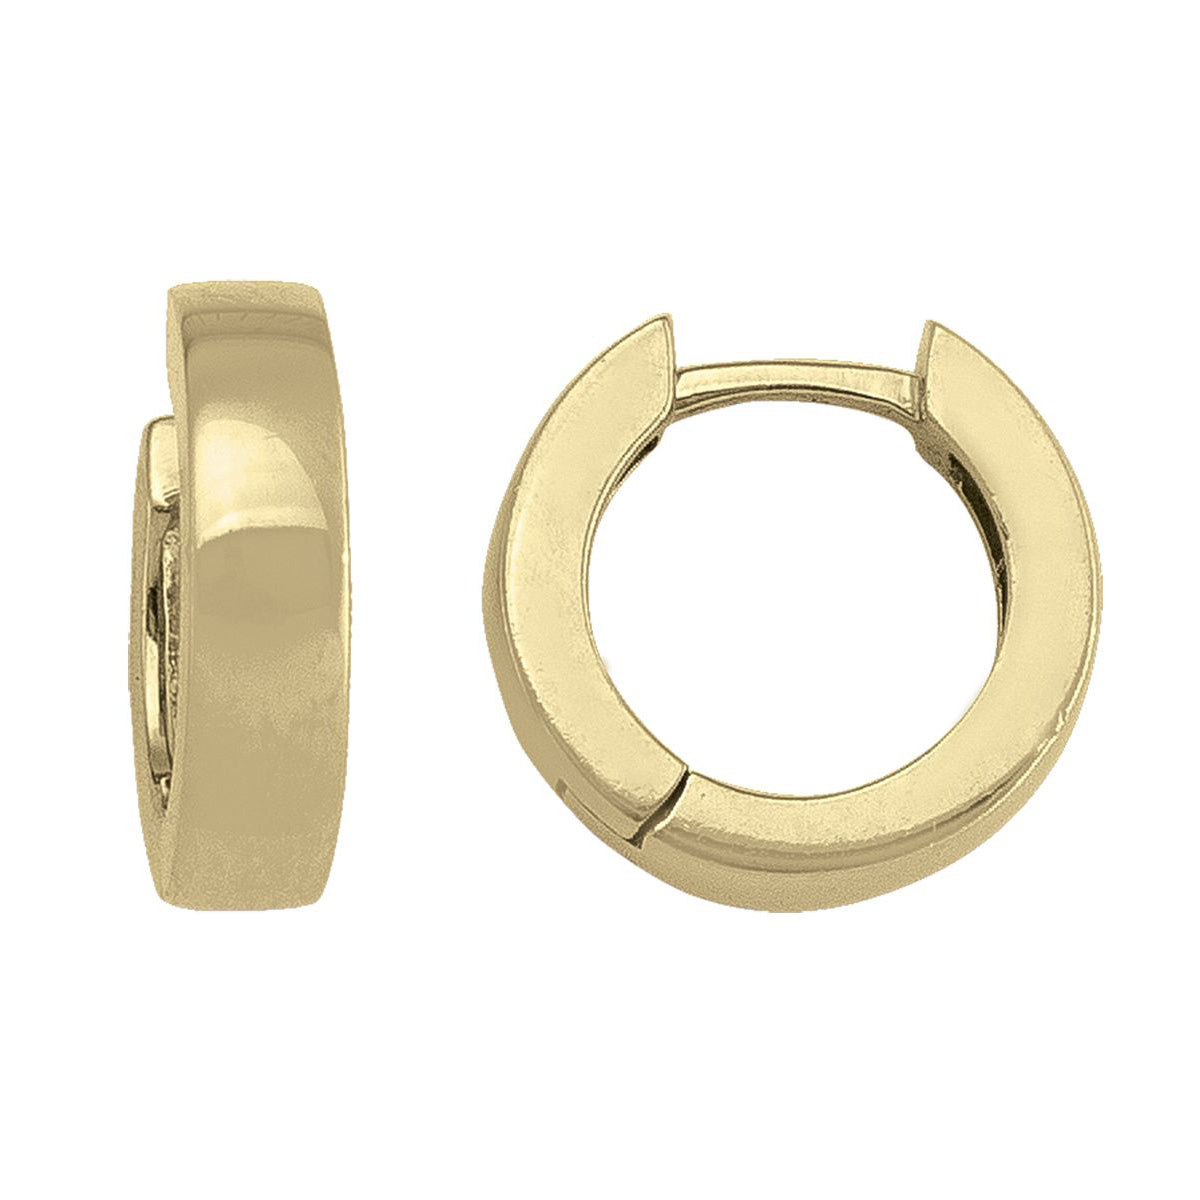 EHG0101, Gold Earrings, Huggies, 3.4 mm Tubing